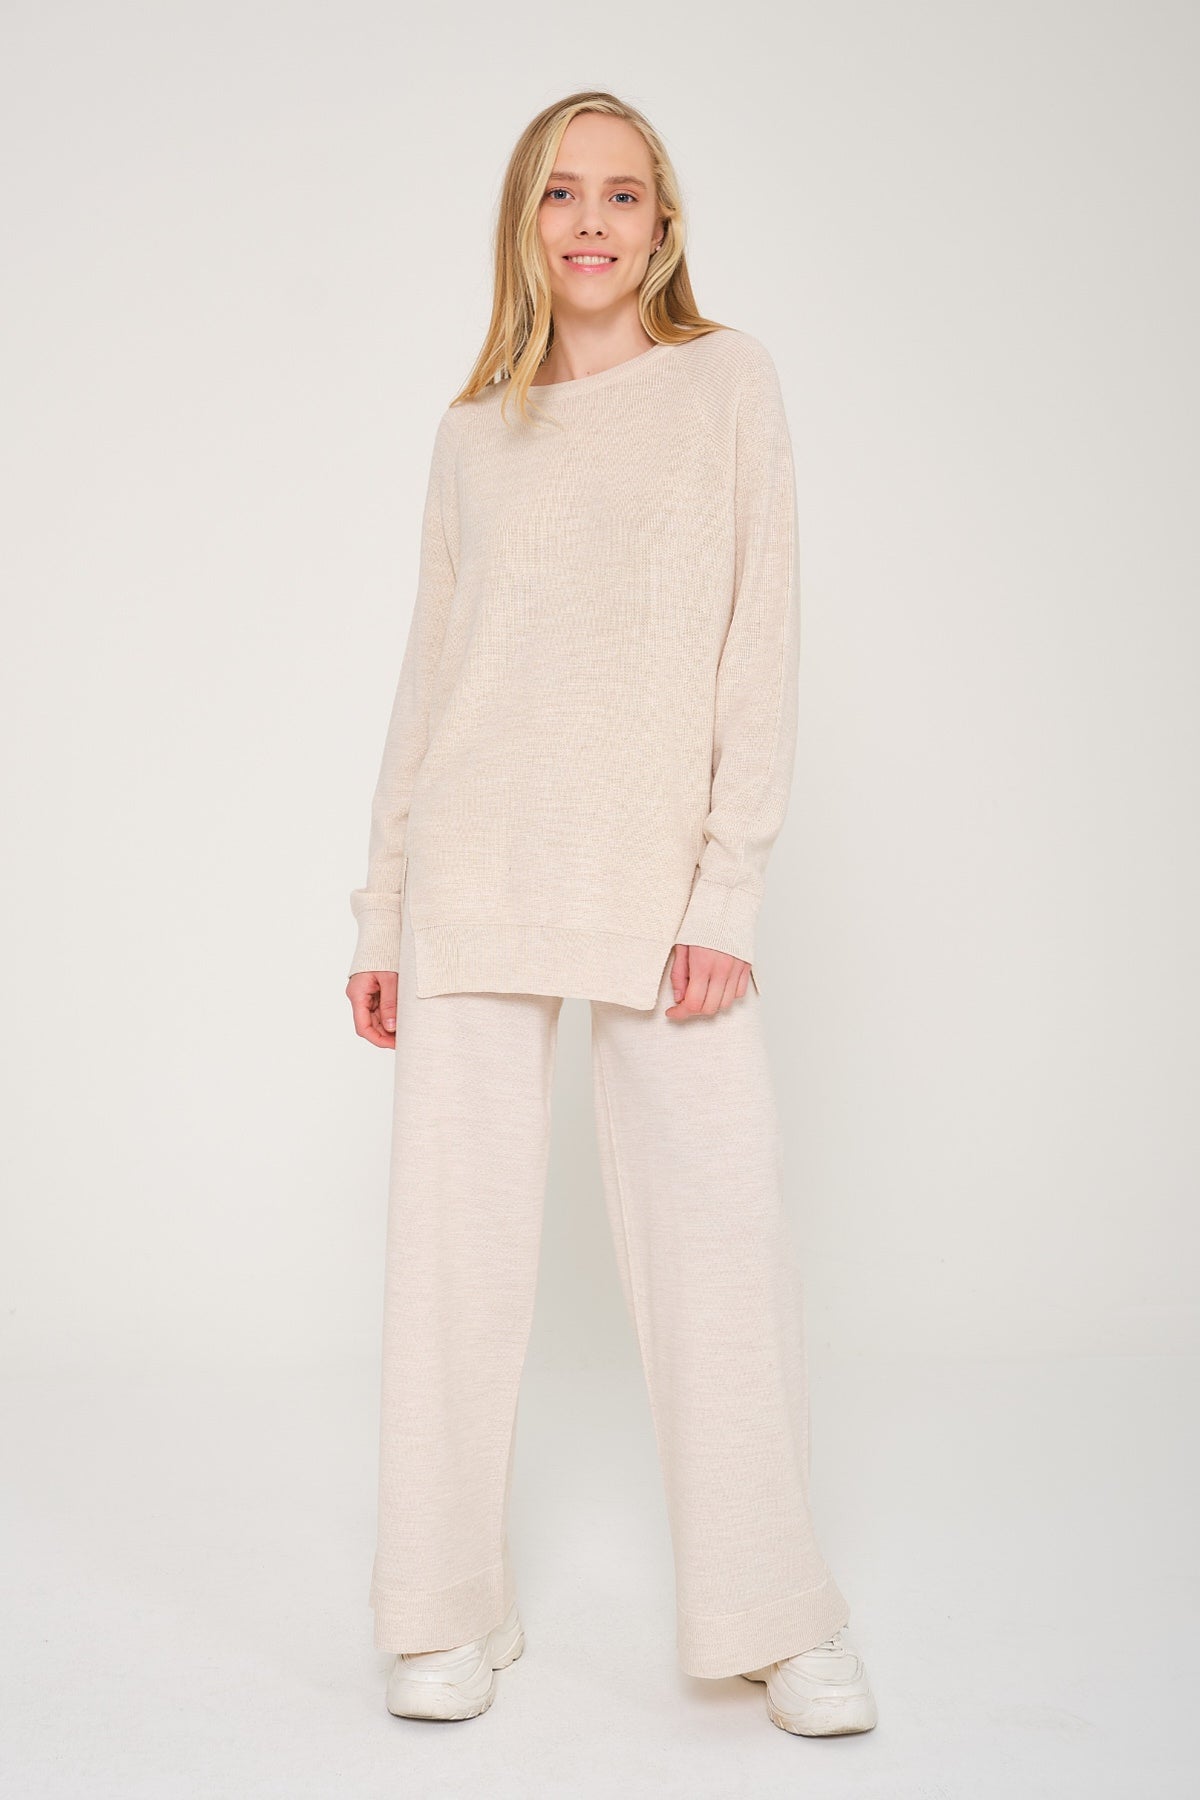 Jacquard Knitted Sweater And Pants Set Beige - Deux par Deux